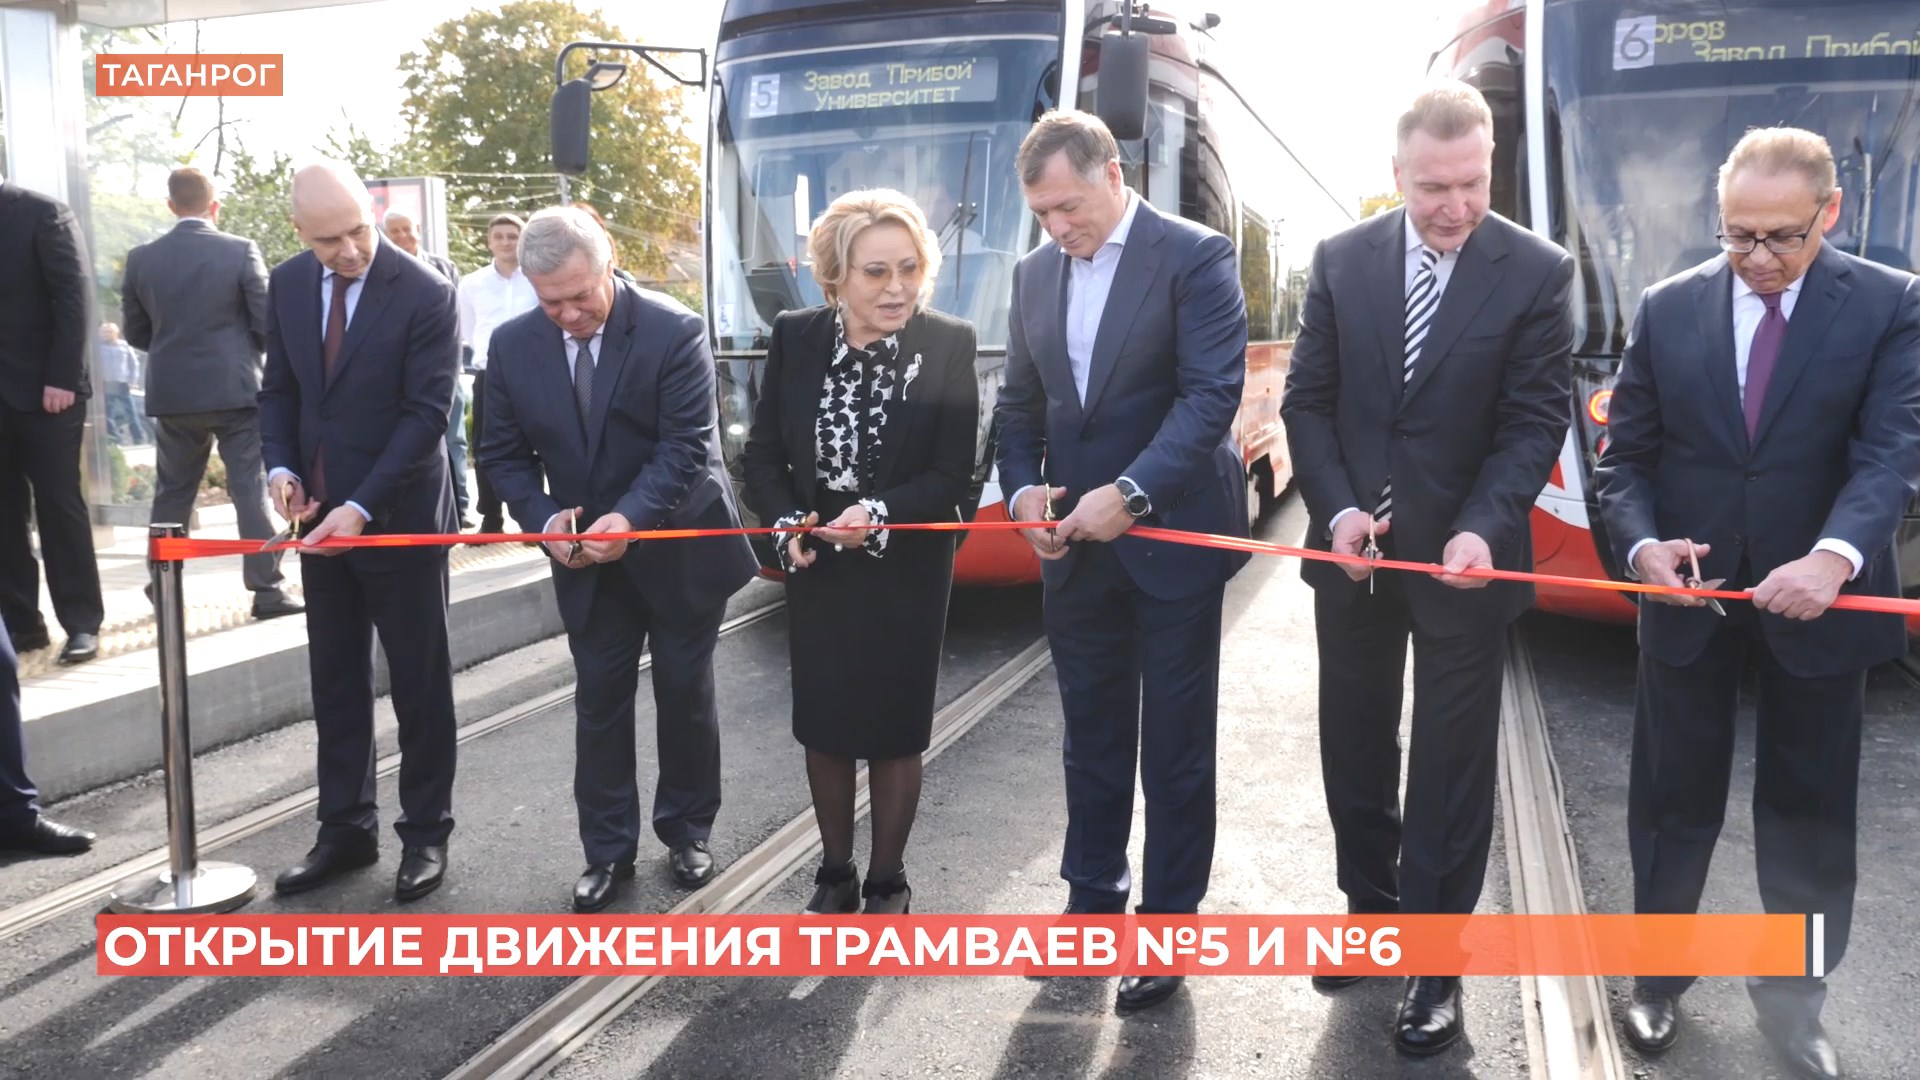 Движение трамвайных маршрутов №5 и №6 открыто в Таганроге после реконструкции